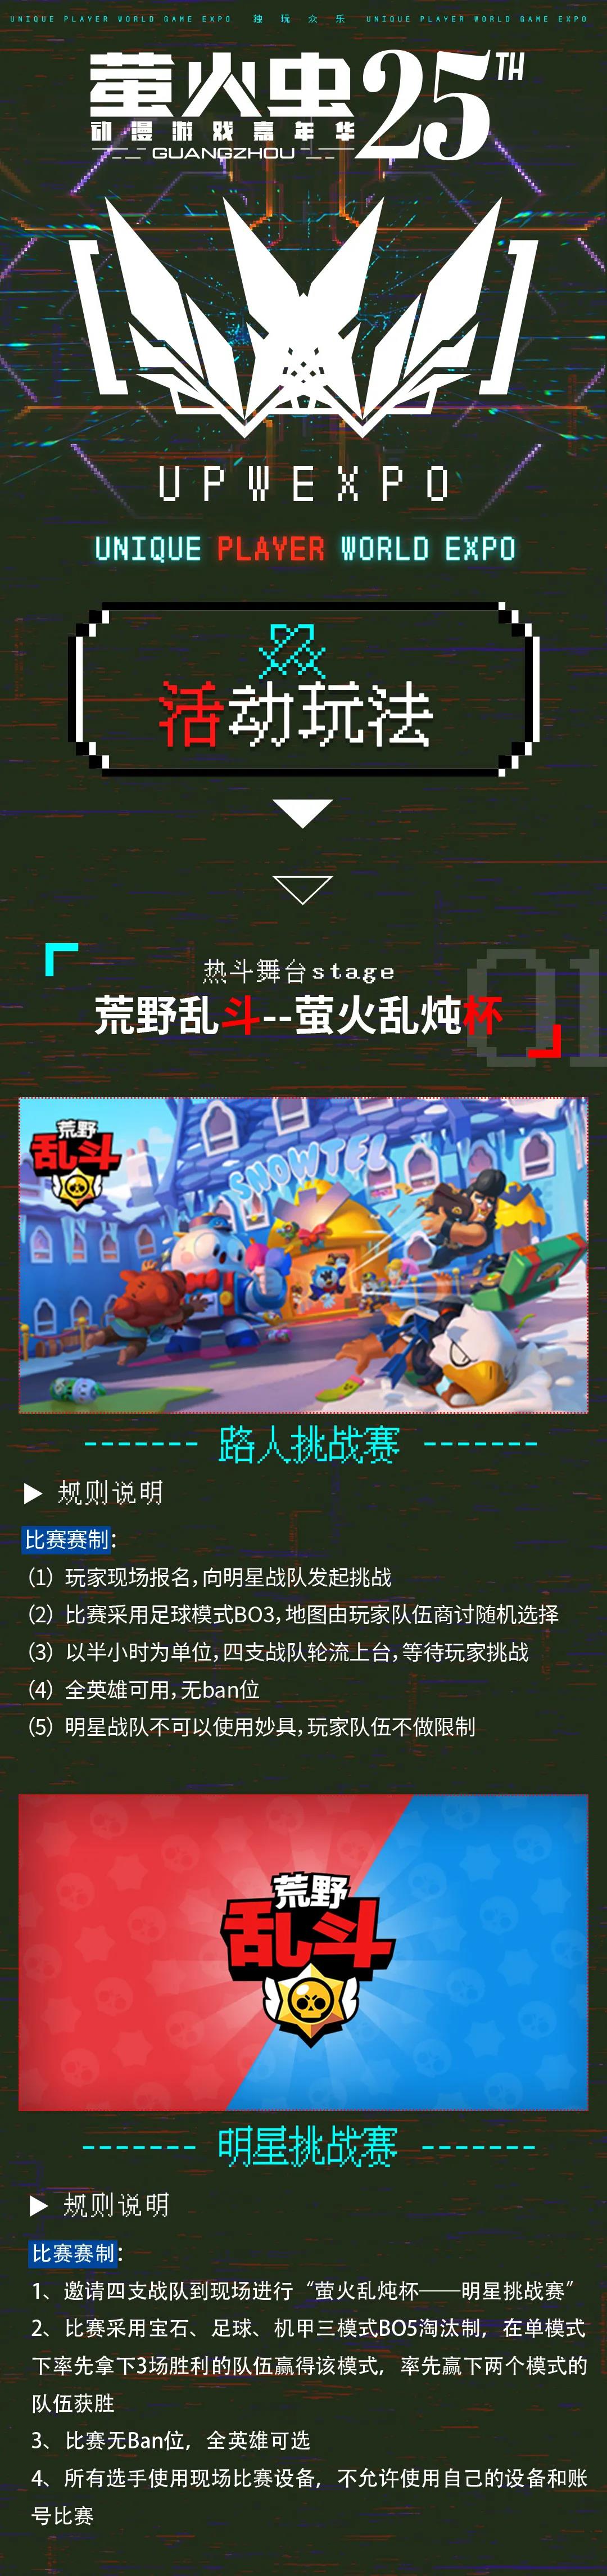 漫展广州丨 Upw Expo 专区情报全公开 一起来玩游戏吧 广州萤火虫动漫文化发展有限公司